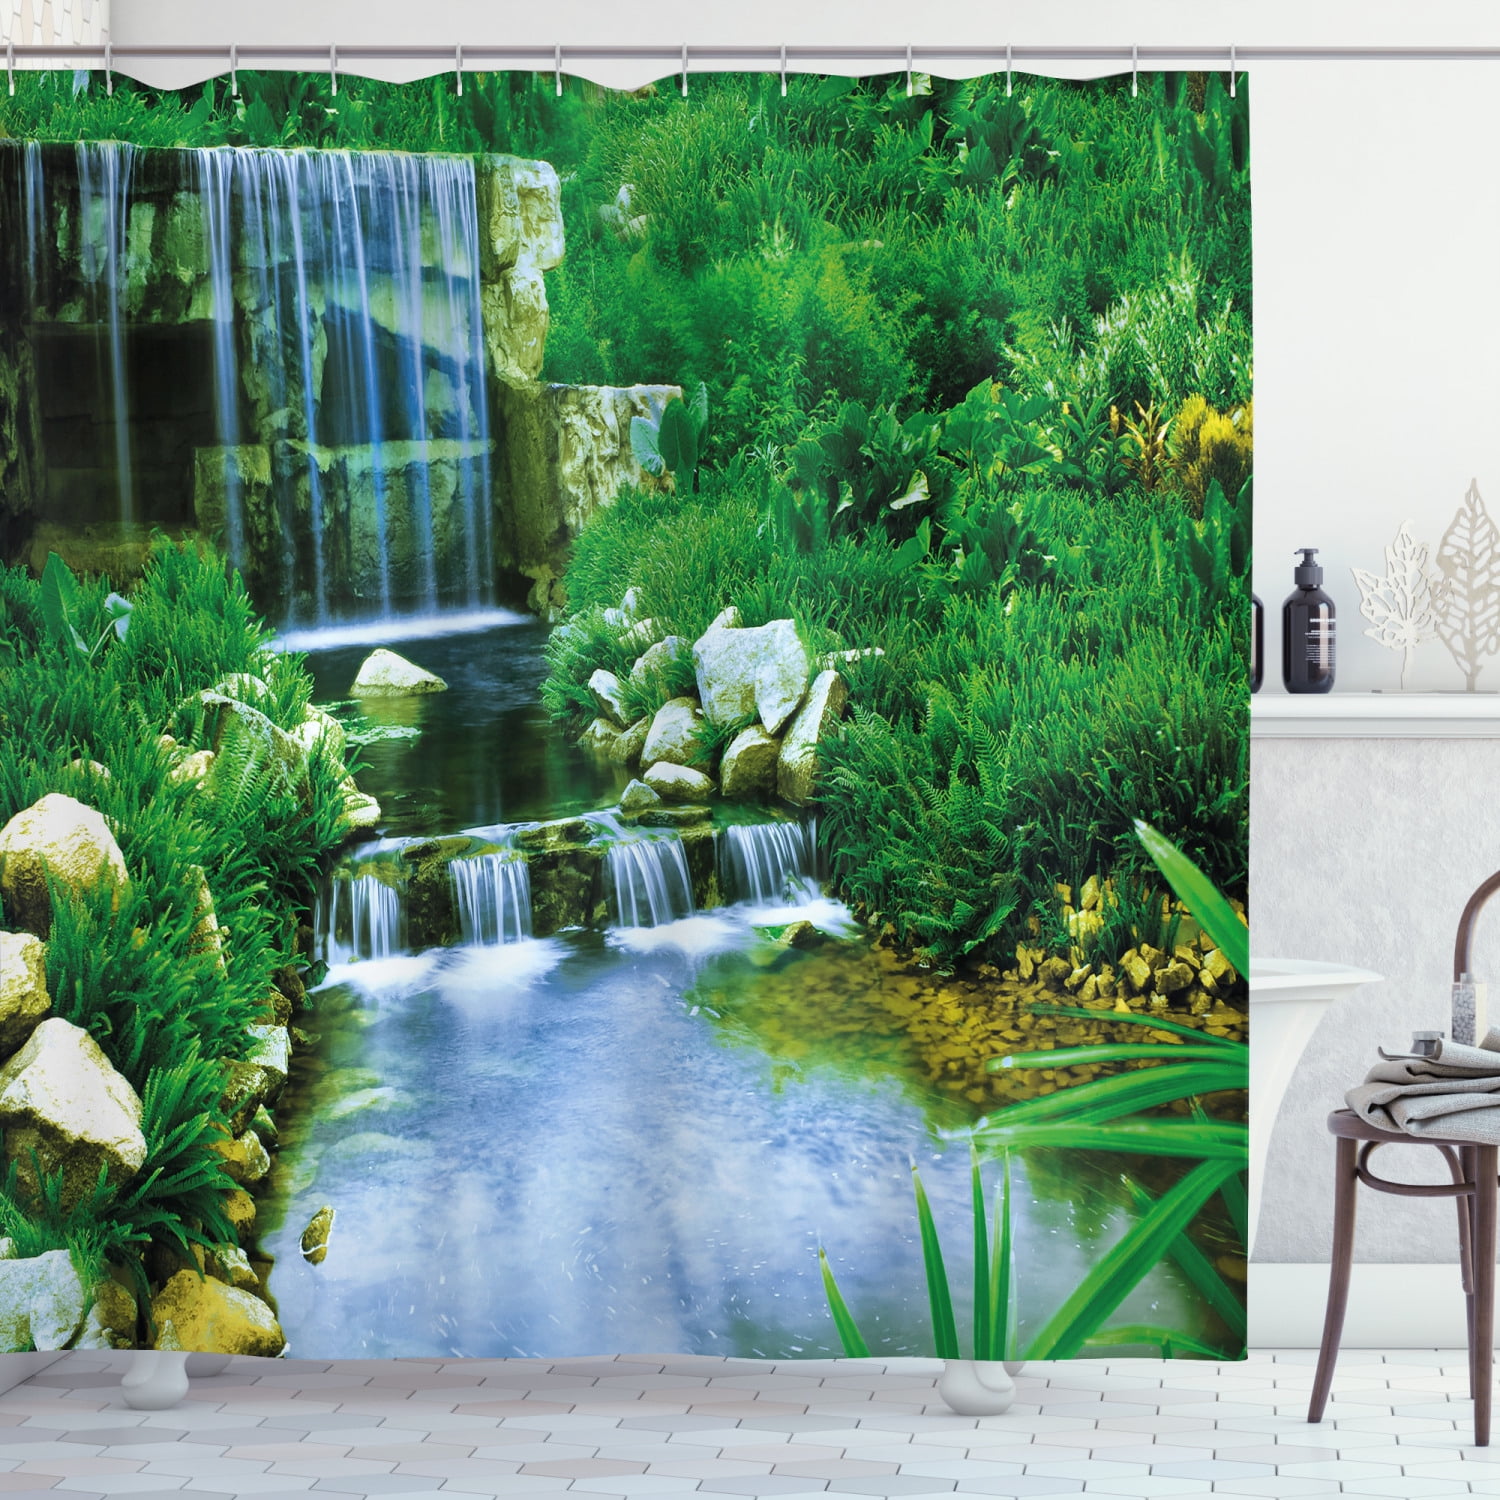 Japan Waterfall Garden Shower Curtain Set Bath Mat Waterproof Fabric 12Hooks 72" 